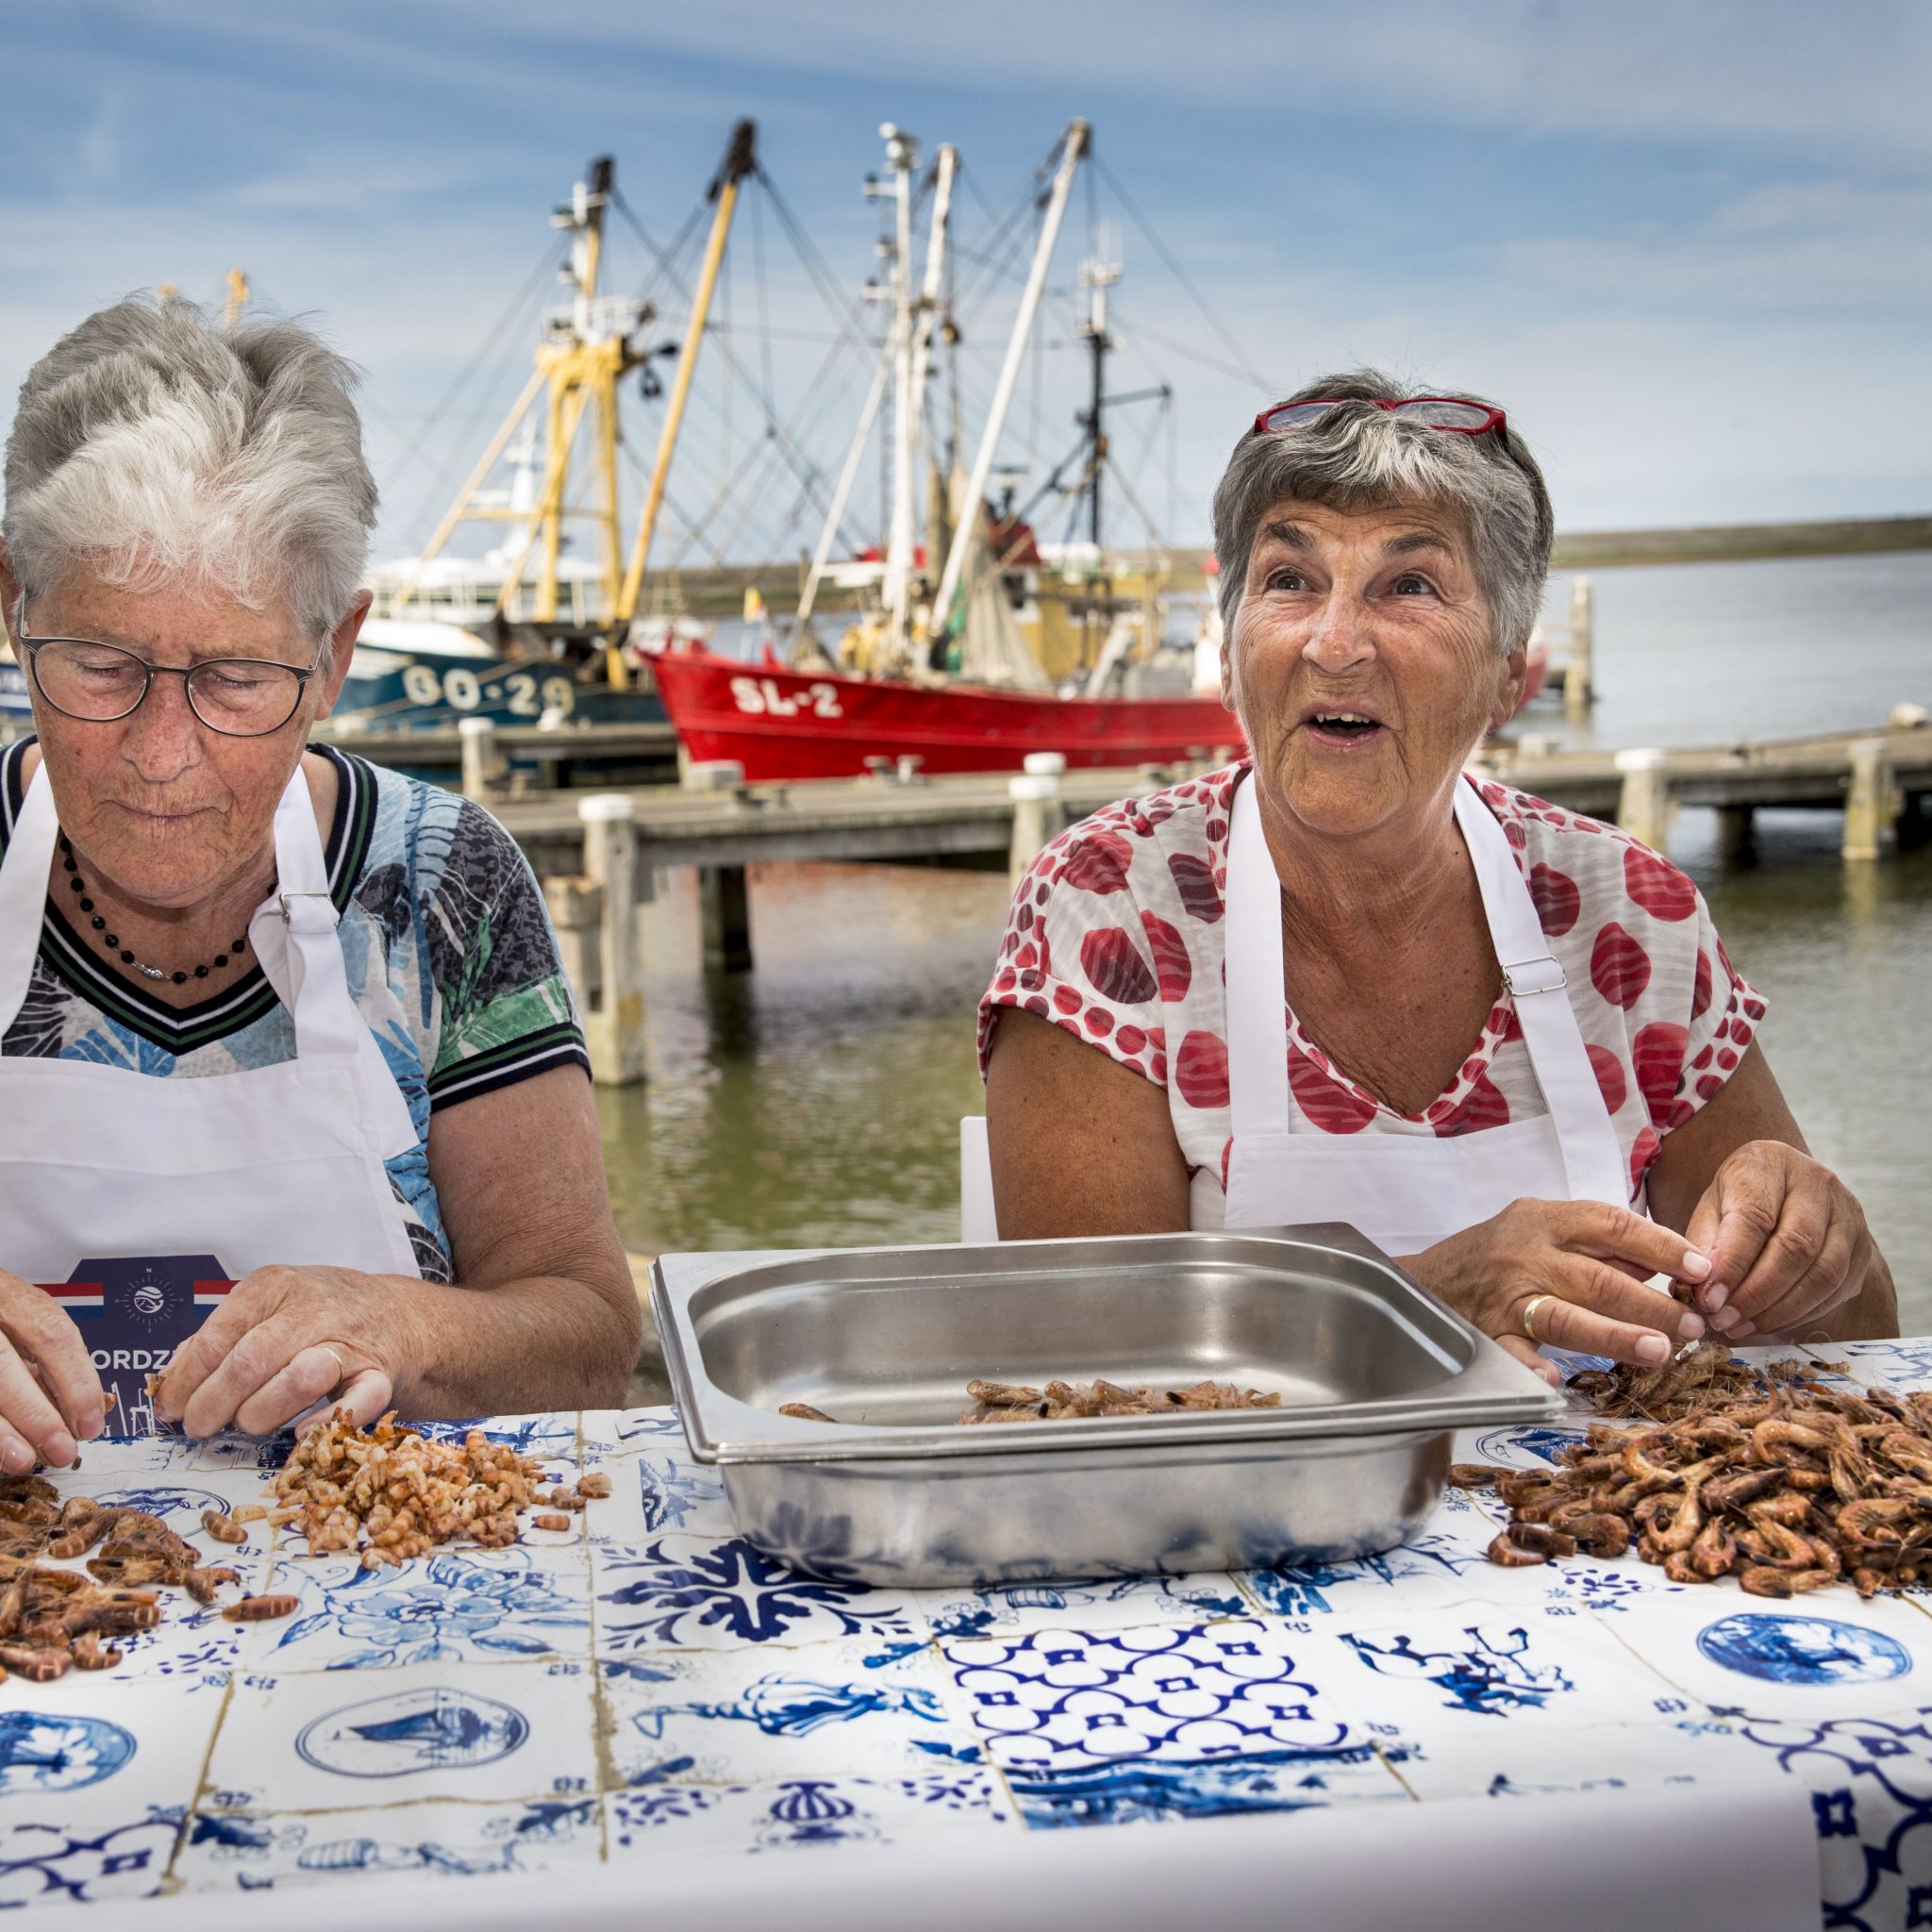 Met de hand worden garnalen gepeld in de haven van Stellendam. (Foto ANP / Arie Kievit)